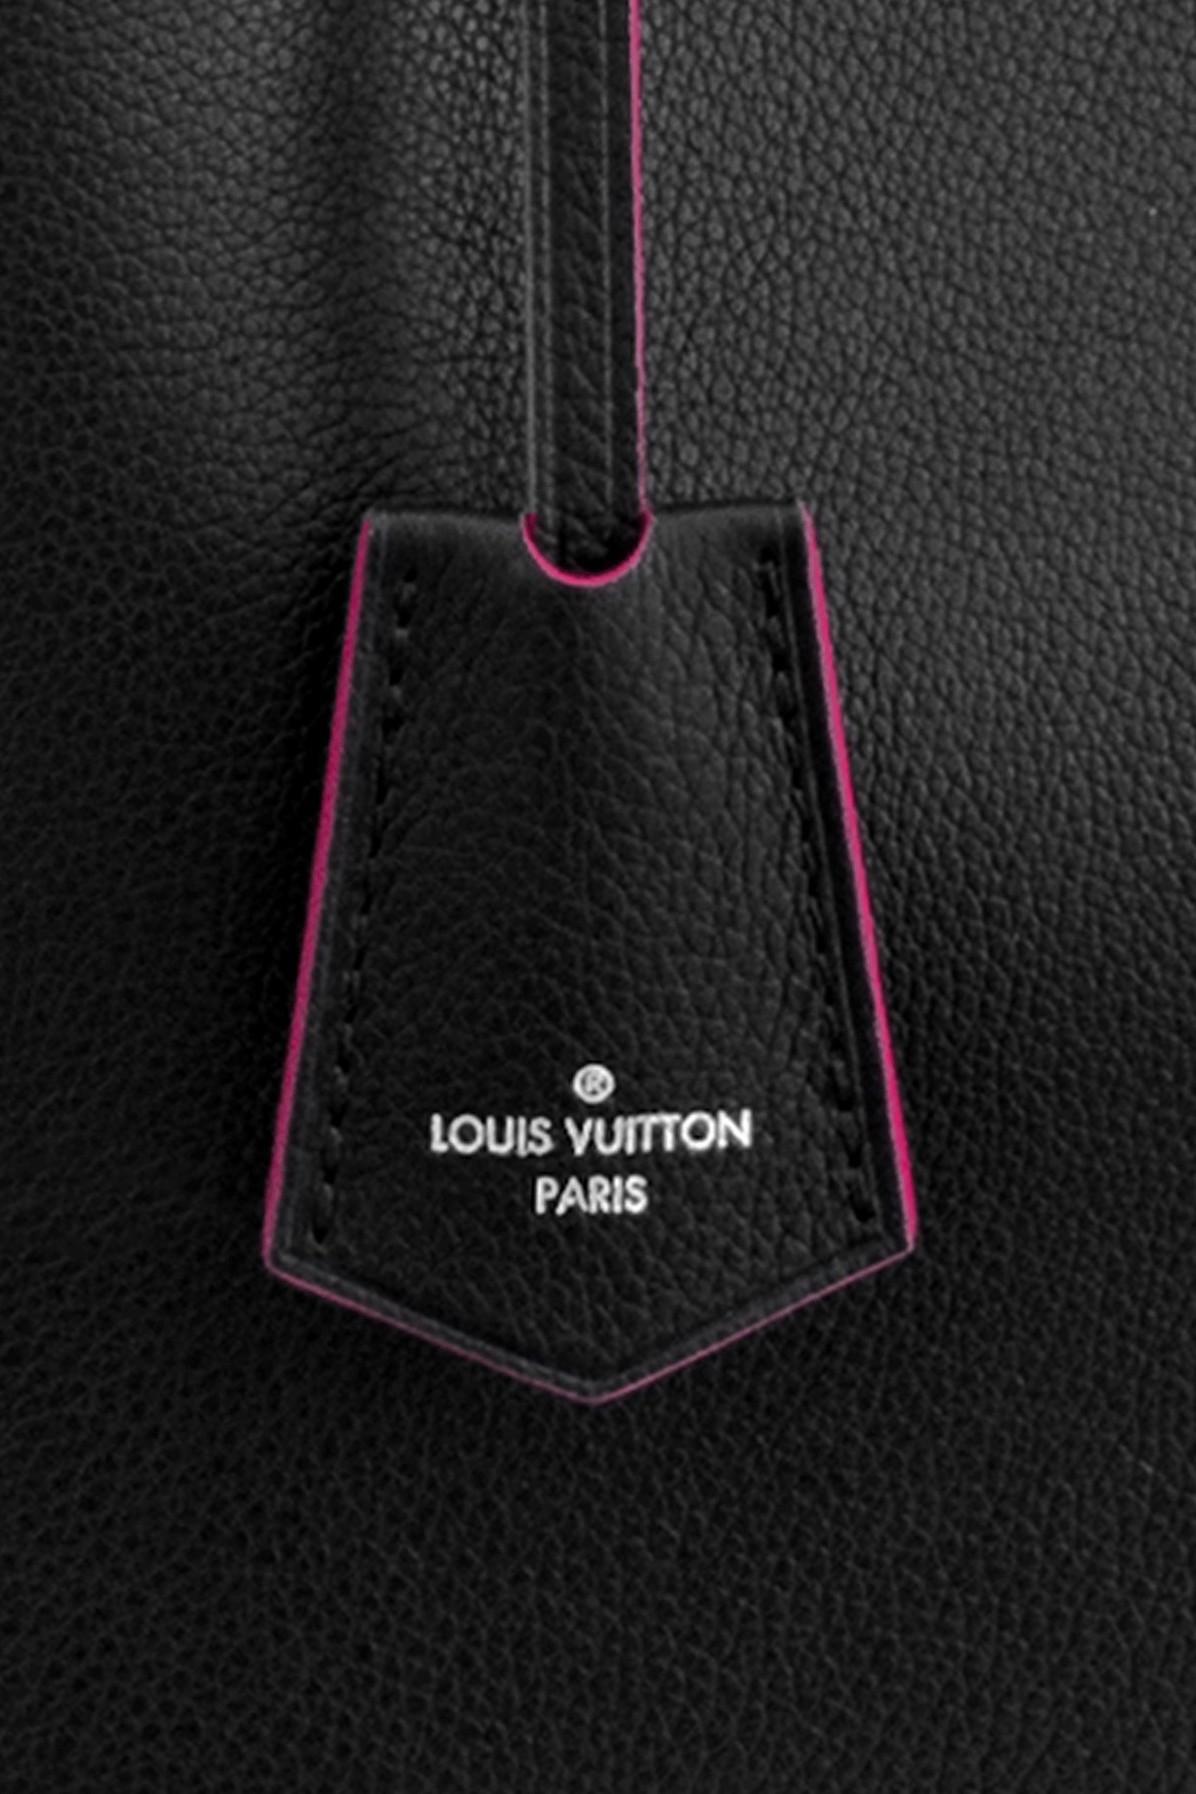 Authentic LOUIS VUITTON Lockme Bucket M57688 Shoulder bag #260-003-643-6859